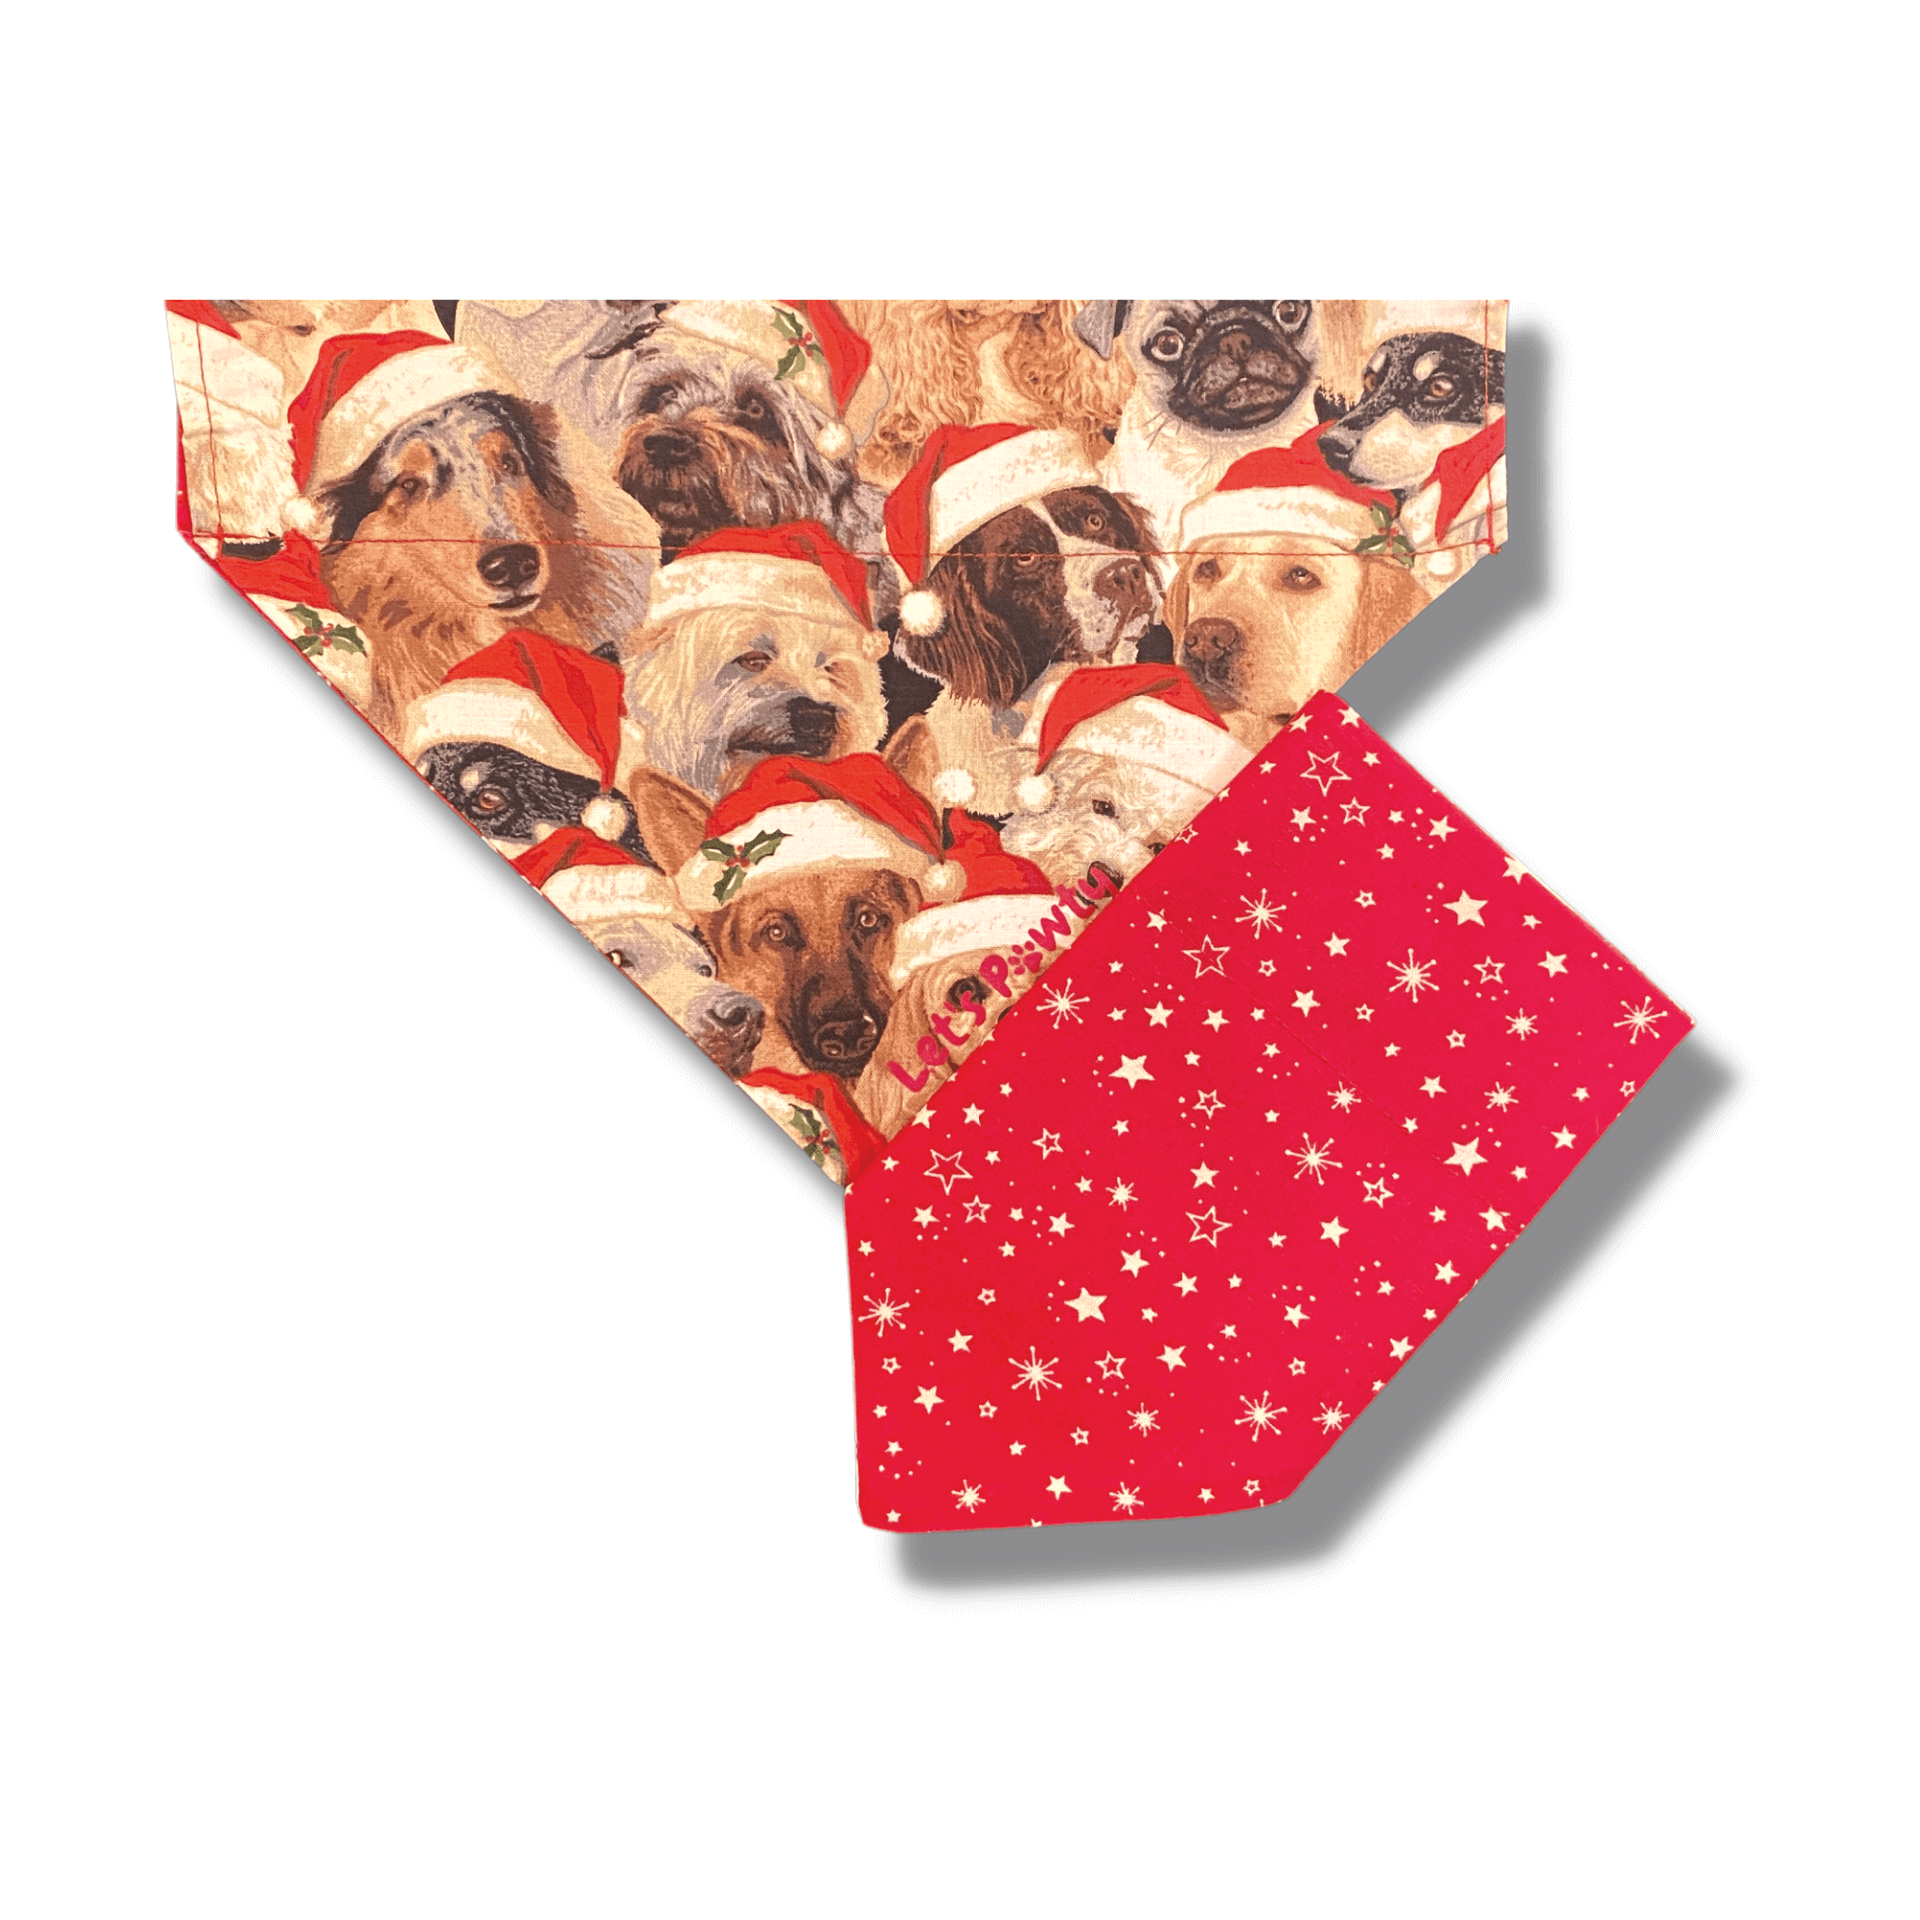 Christmas themed reversible dog bandana, fashion dog accessory